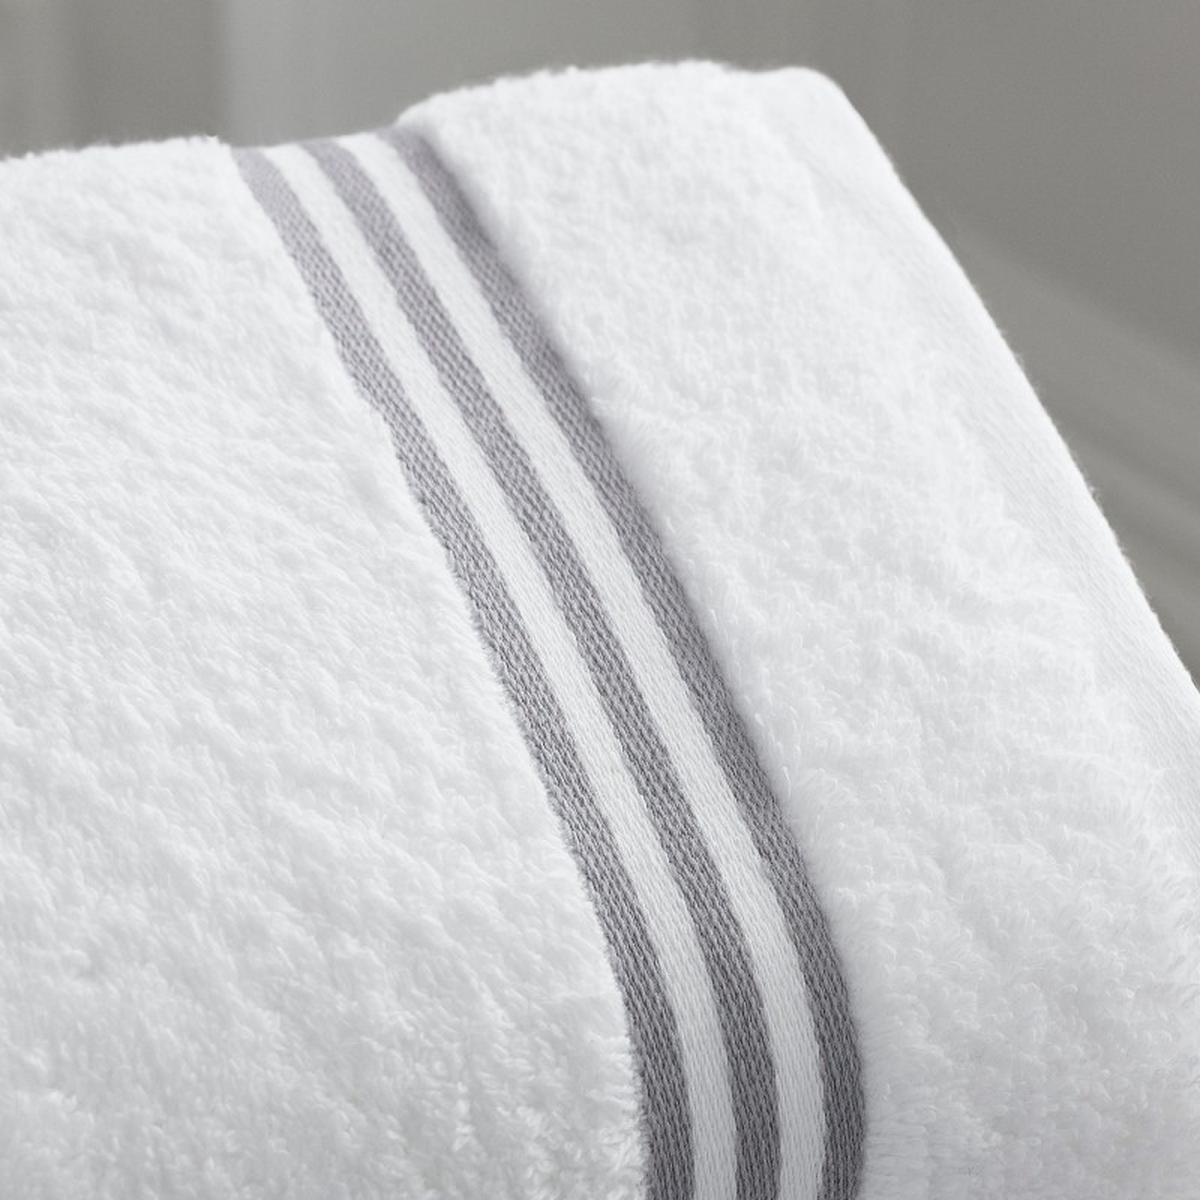 Trucos caseros | La secreta para quitar las pelusas de las toallas nuevas | Remedios | Hacks | nnda nnni | MUJER | OJO